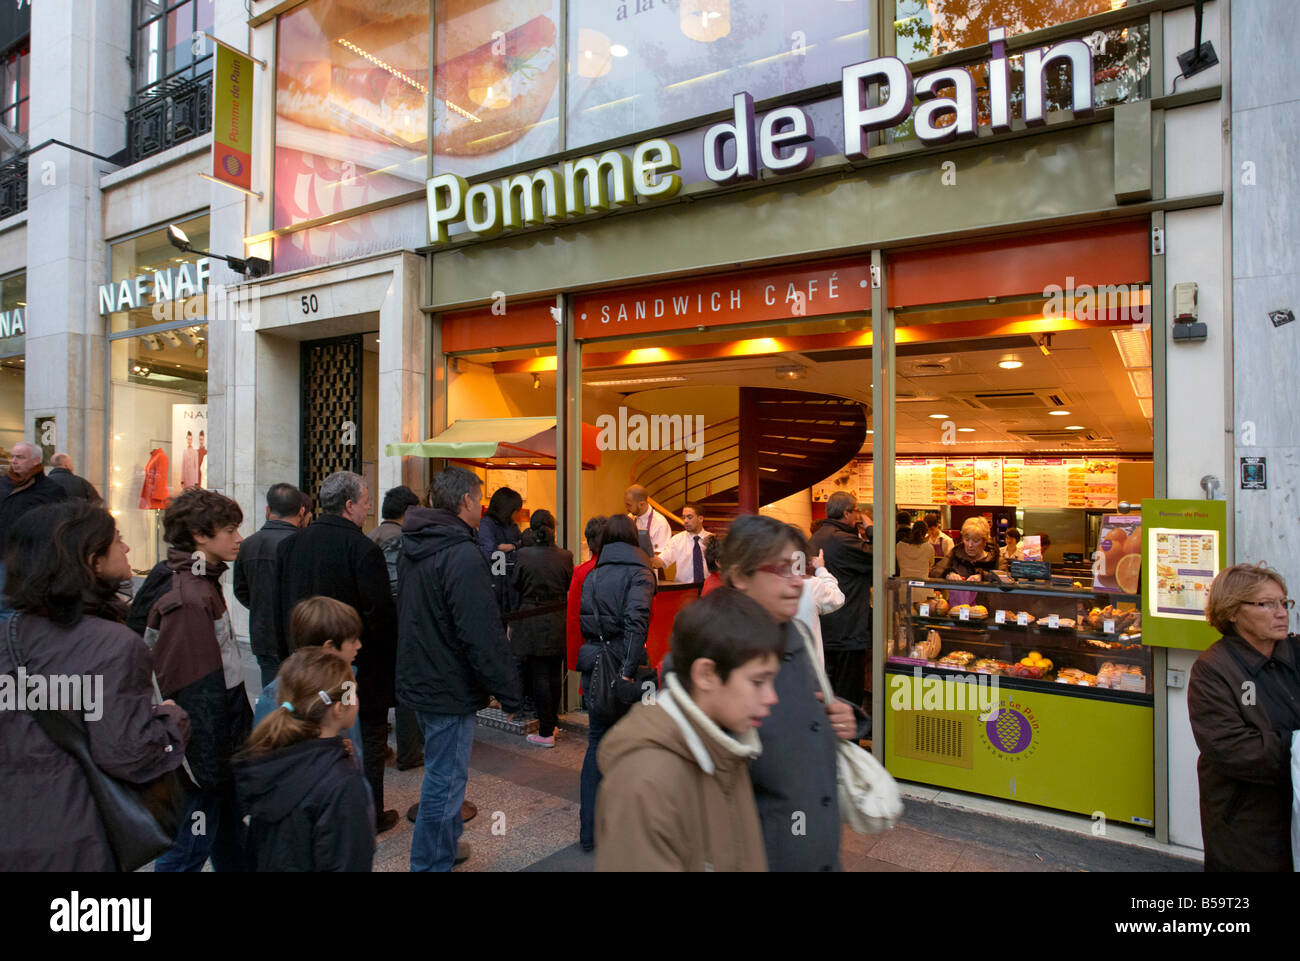 Pomme de Pain cafe at Champs Elysees Paris France Stock Photo